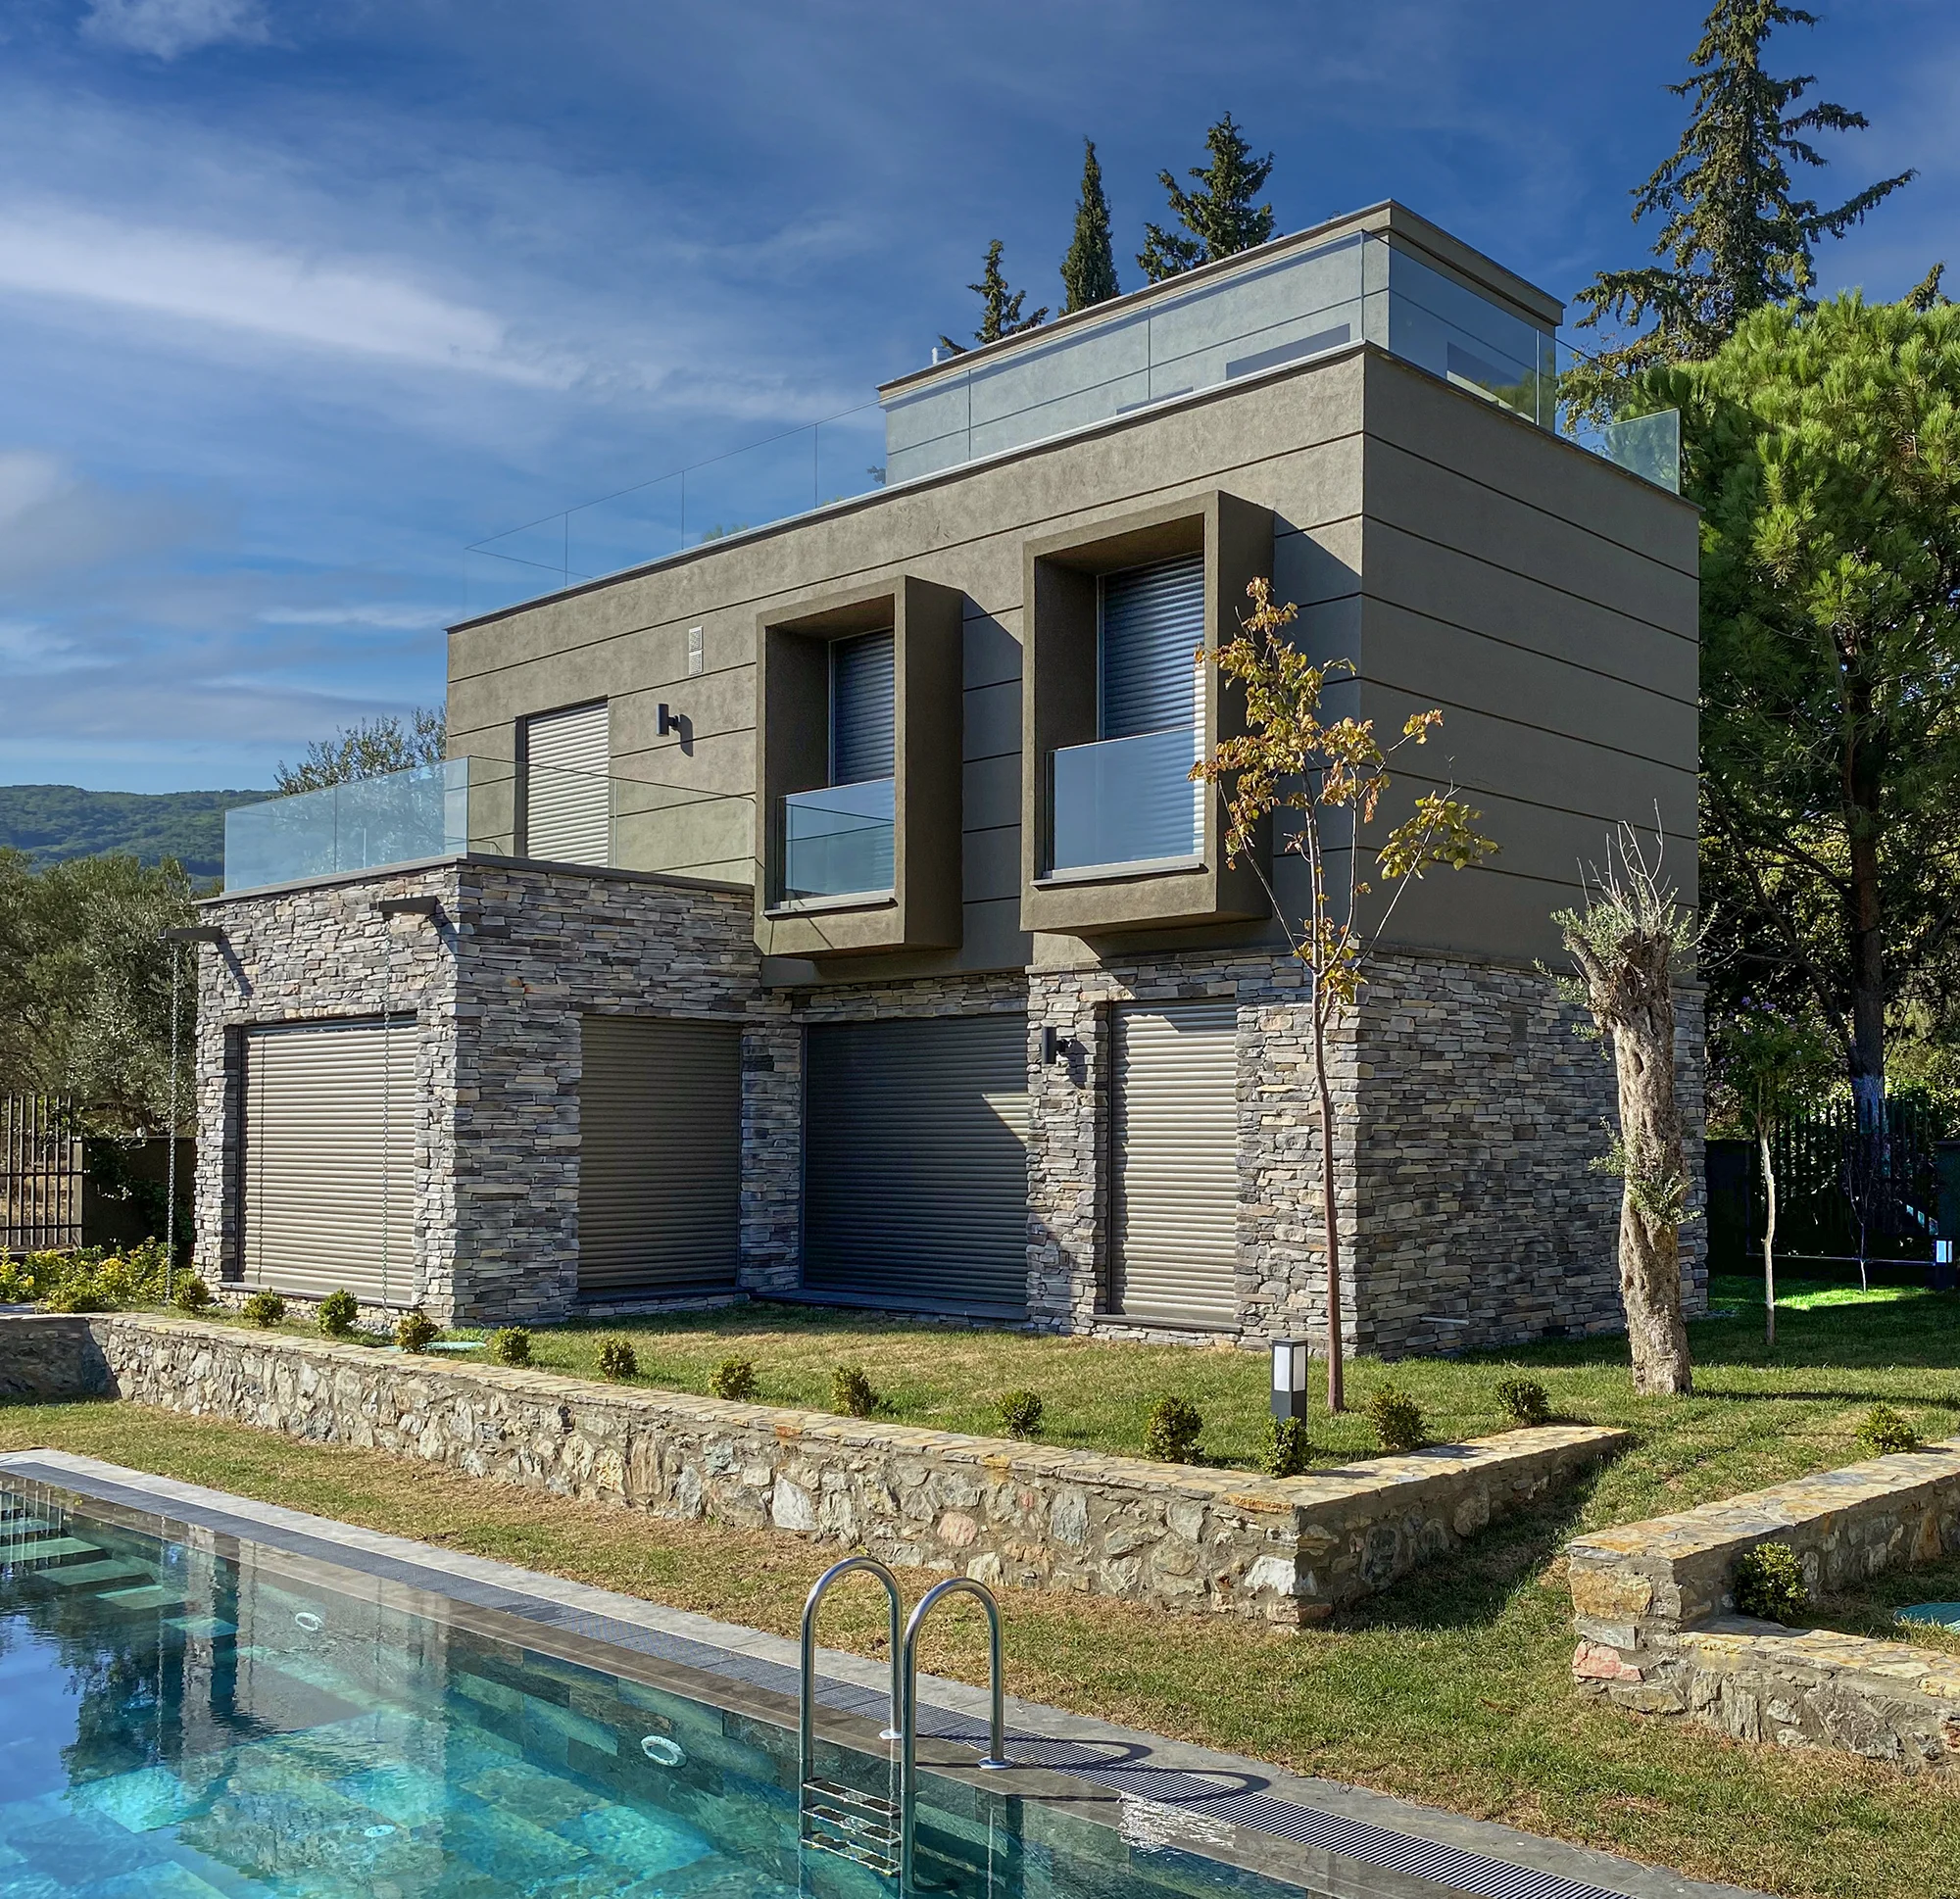 Seven Heaven villas with decorative stone facades in Kaz Mountains